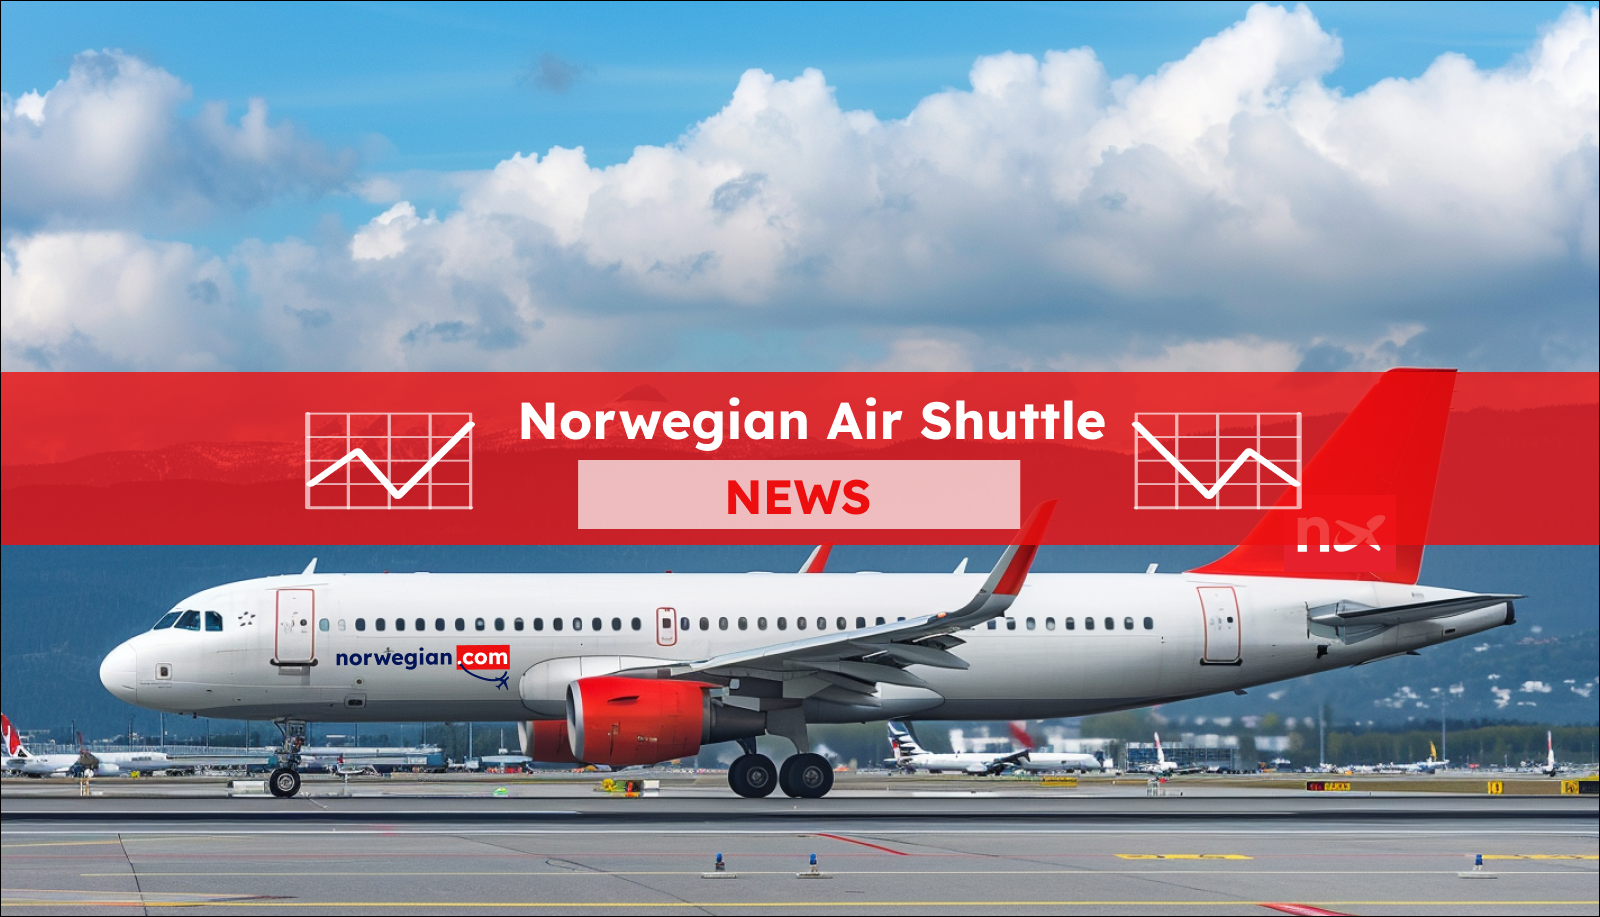 Ein Passagierflugzeug auf dem Rollfeld mit dem Schriftzug norwegian.com auf dem Rumpf, im Hintergrund sind blauer Himmel und schneebedeckte Berge, mit einem Norwegian Air Shuttle NEWS Banner